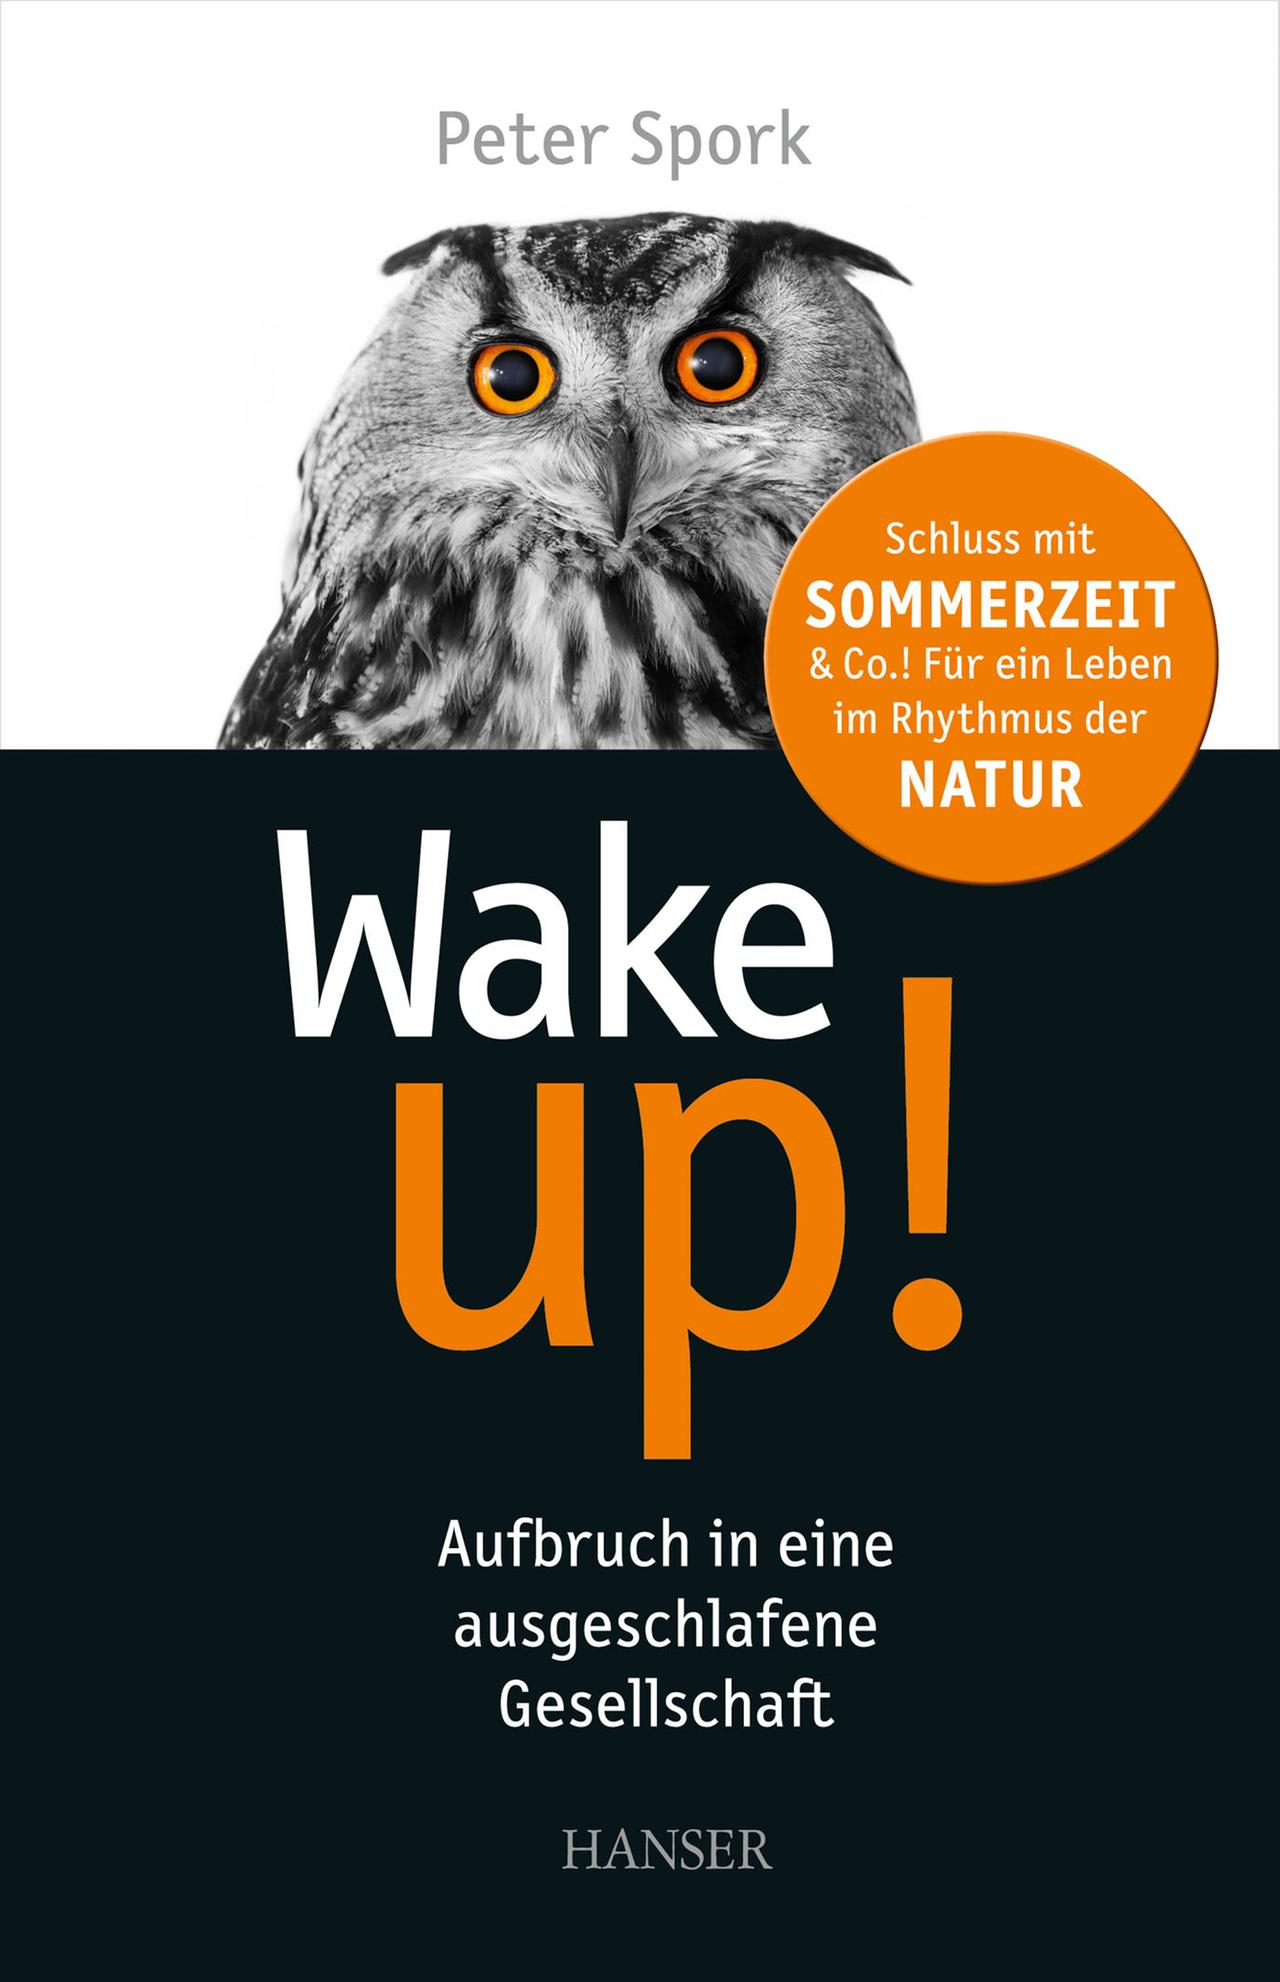 Umschlagbild des Buches von Peter Spork: Wake up!